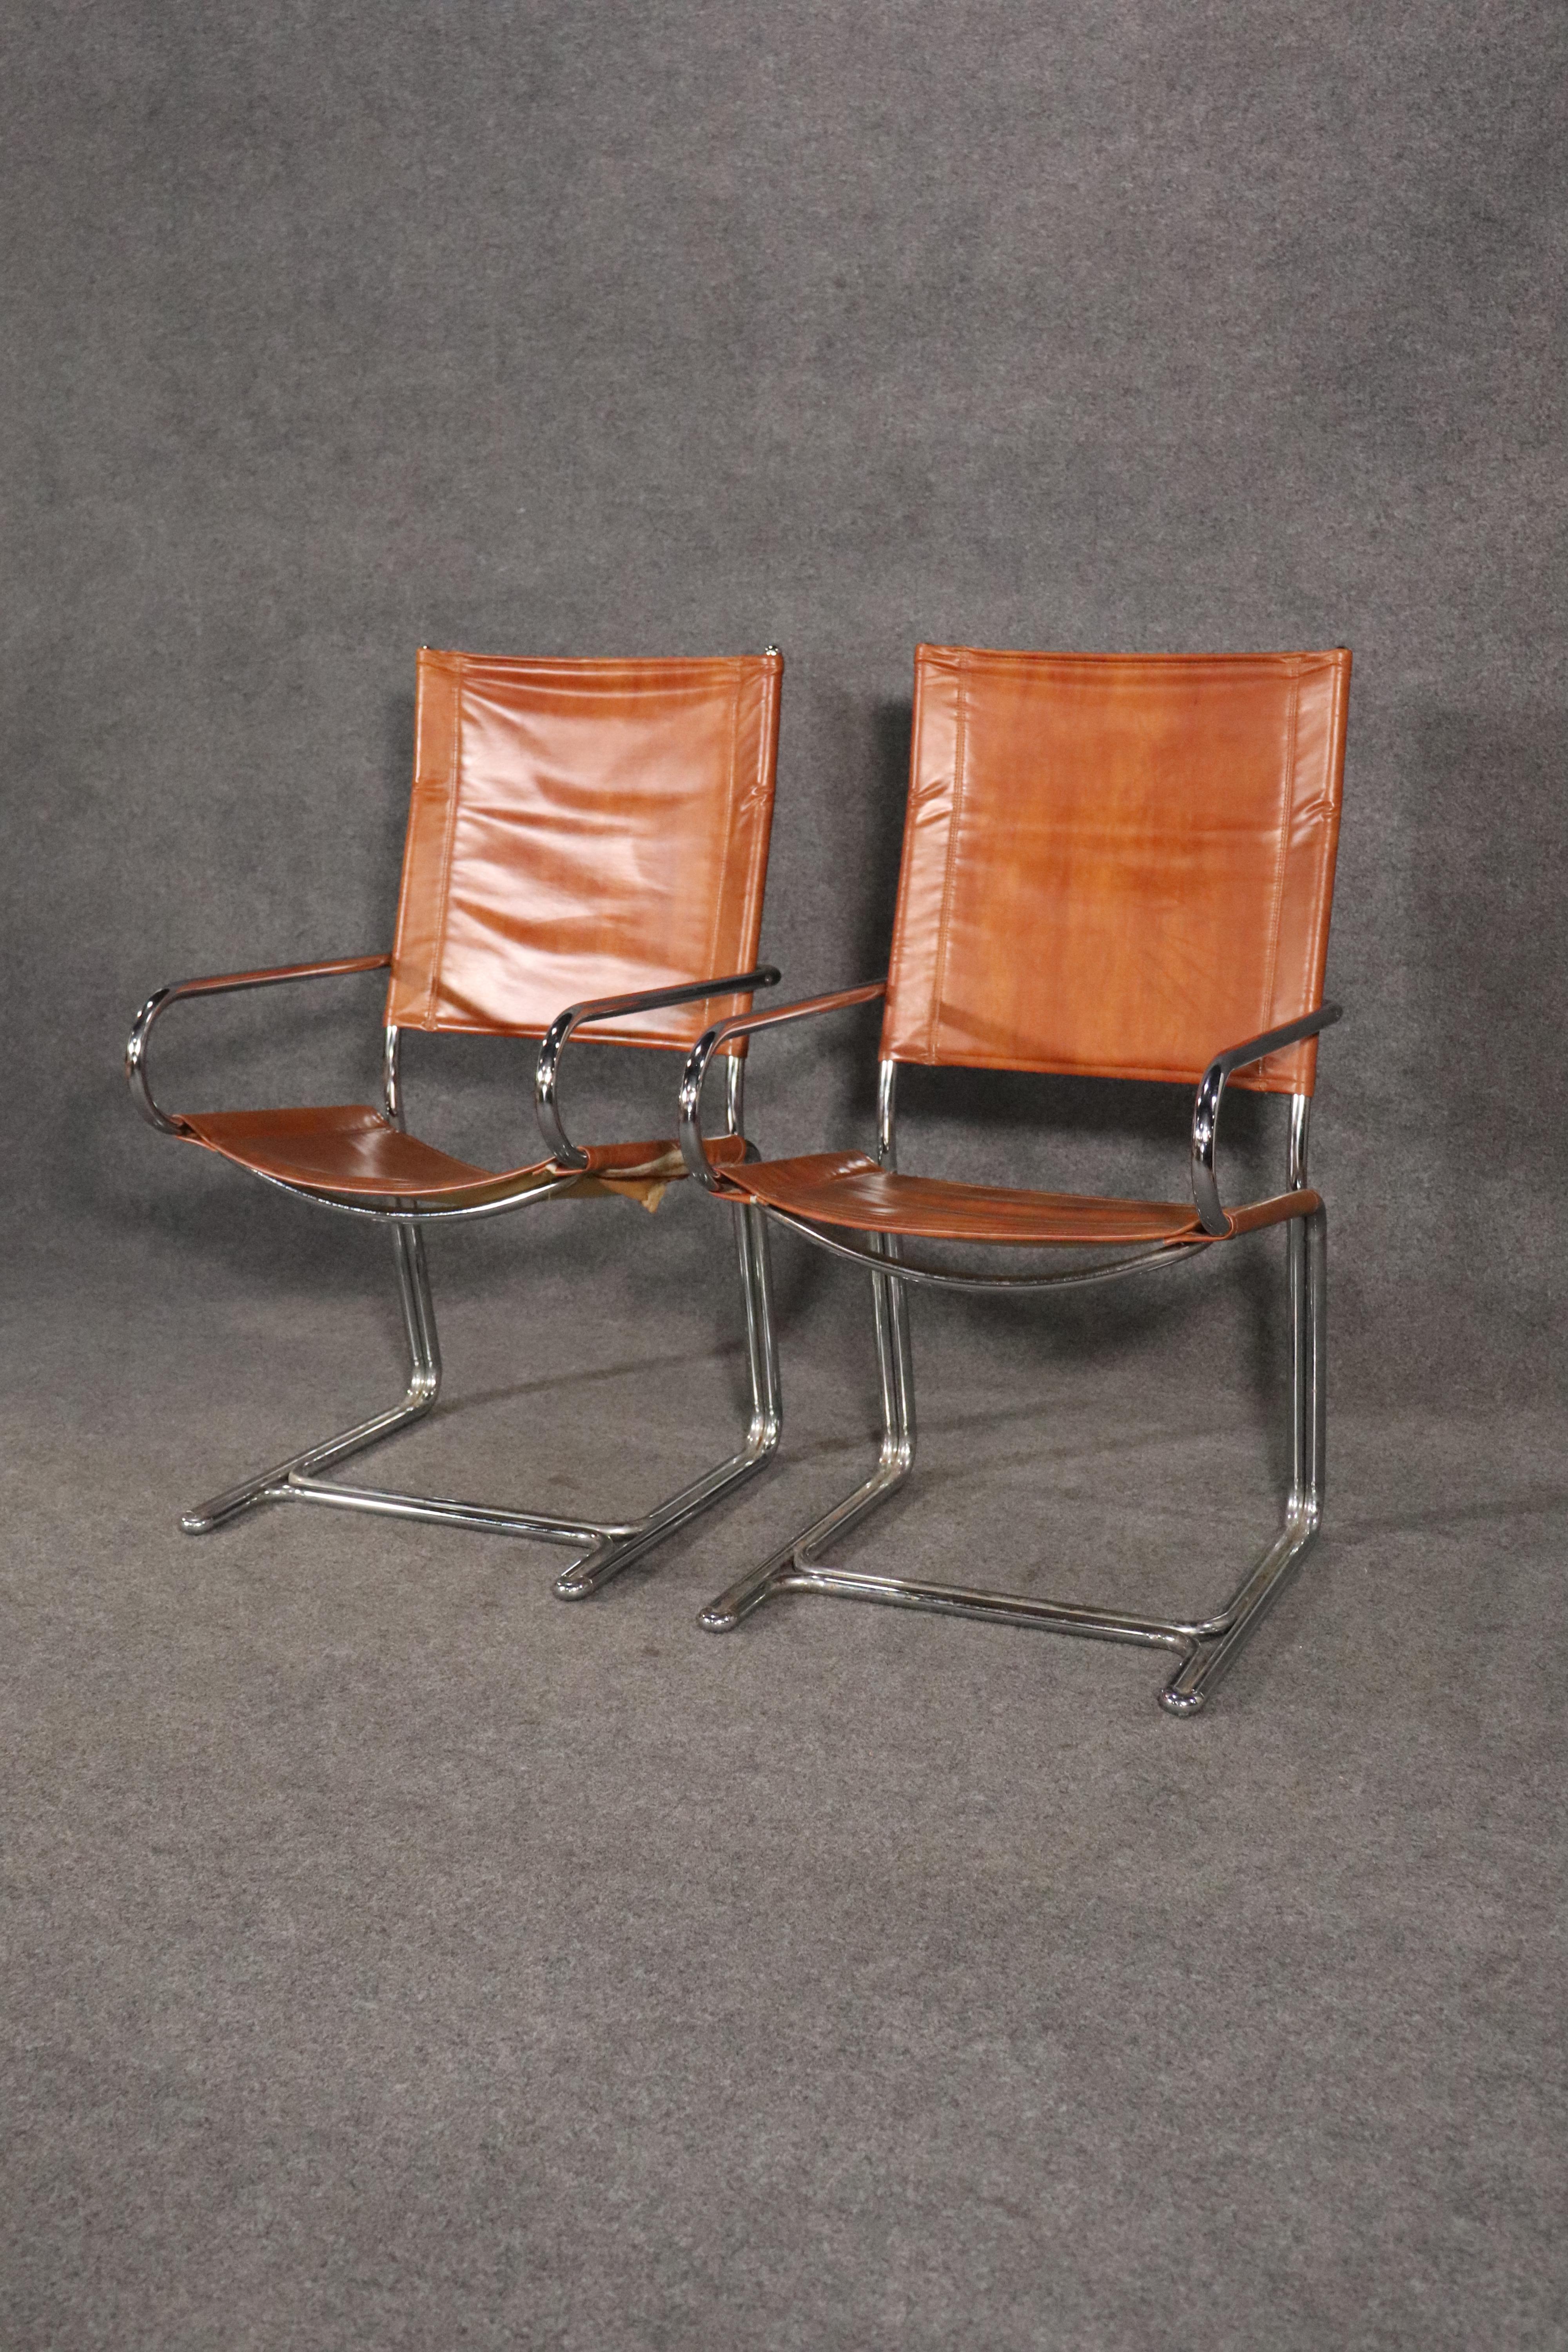 Ein Paar moderne Sessel aus der Mitte des Jahrhunderts von Cosco Home Products. Hergestellt aus einem starken, polierten Chromrahmen, der um den gesamten Stuhl gebogen ist. Niedrige Armlehnen, Sling-Leder-Stil Stoff, robust und stilvoll.
Bitte